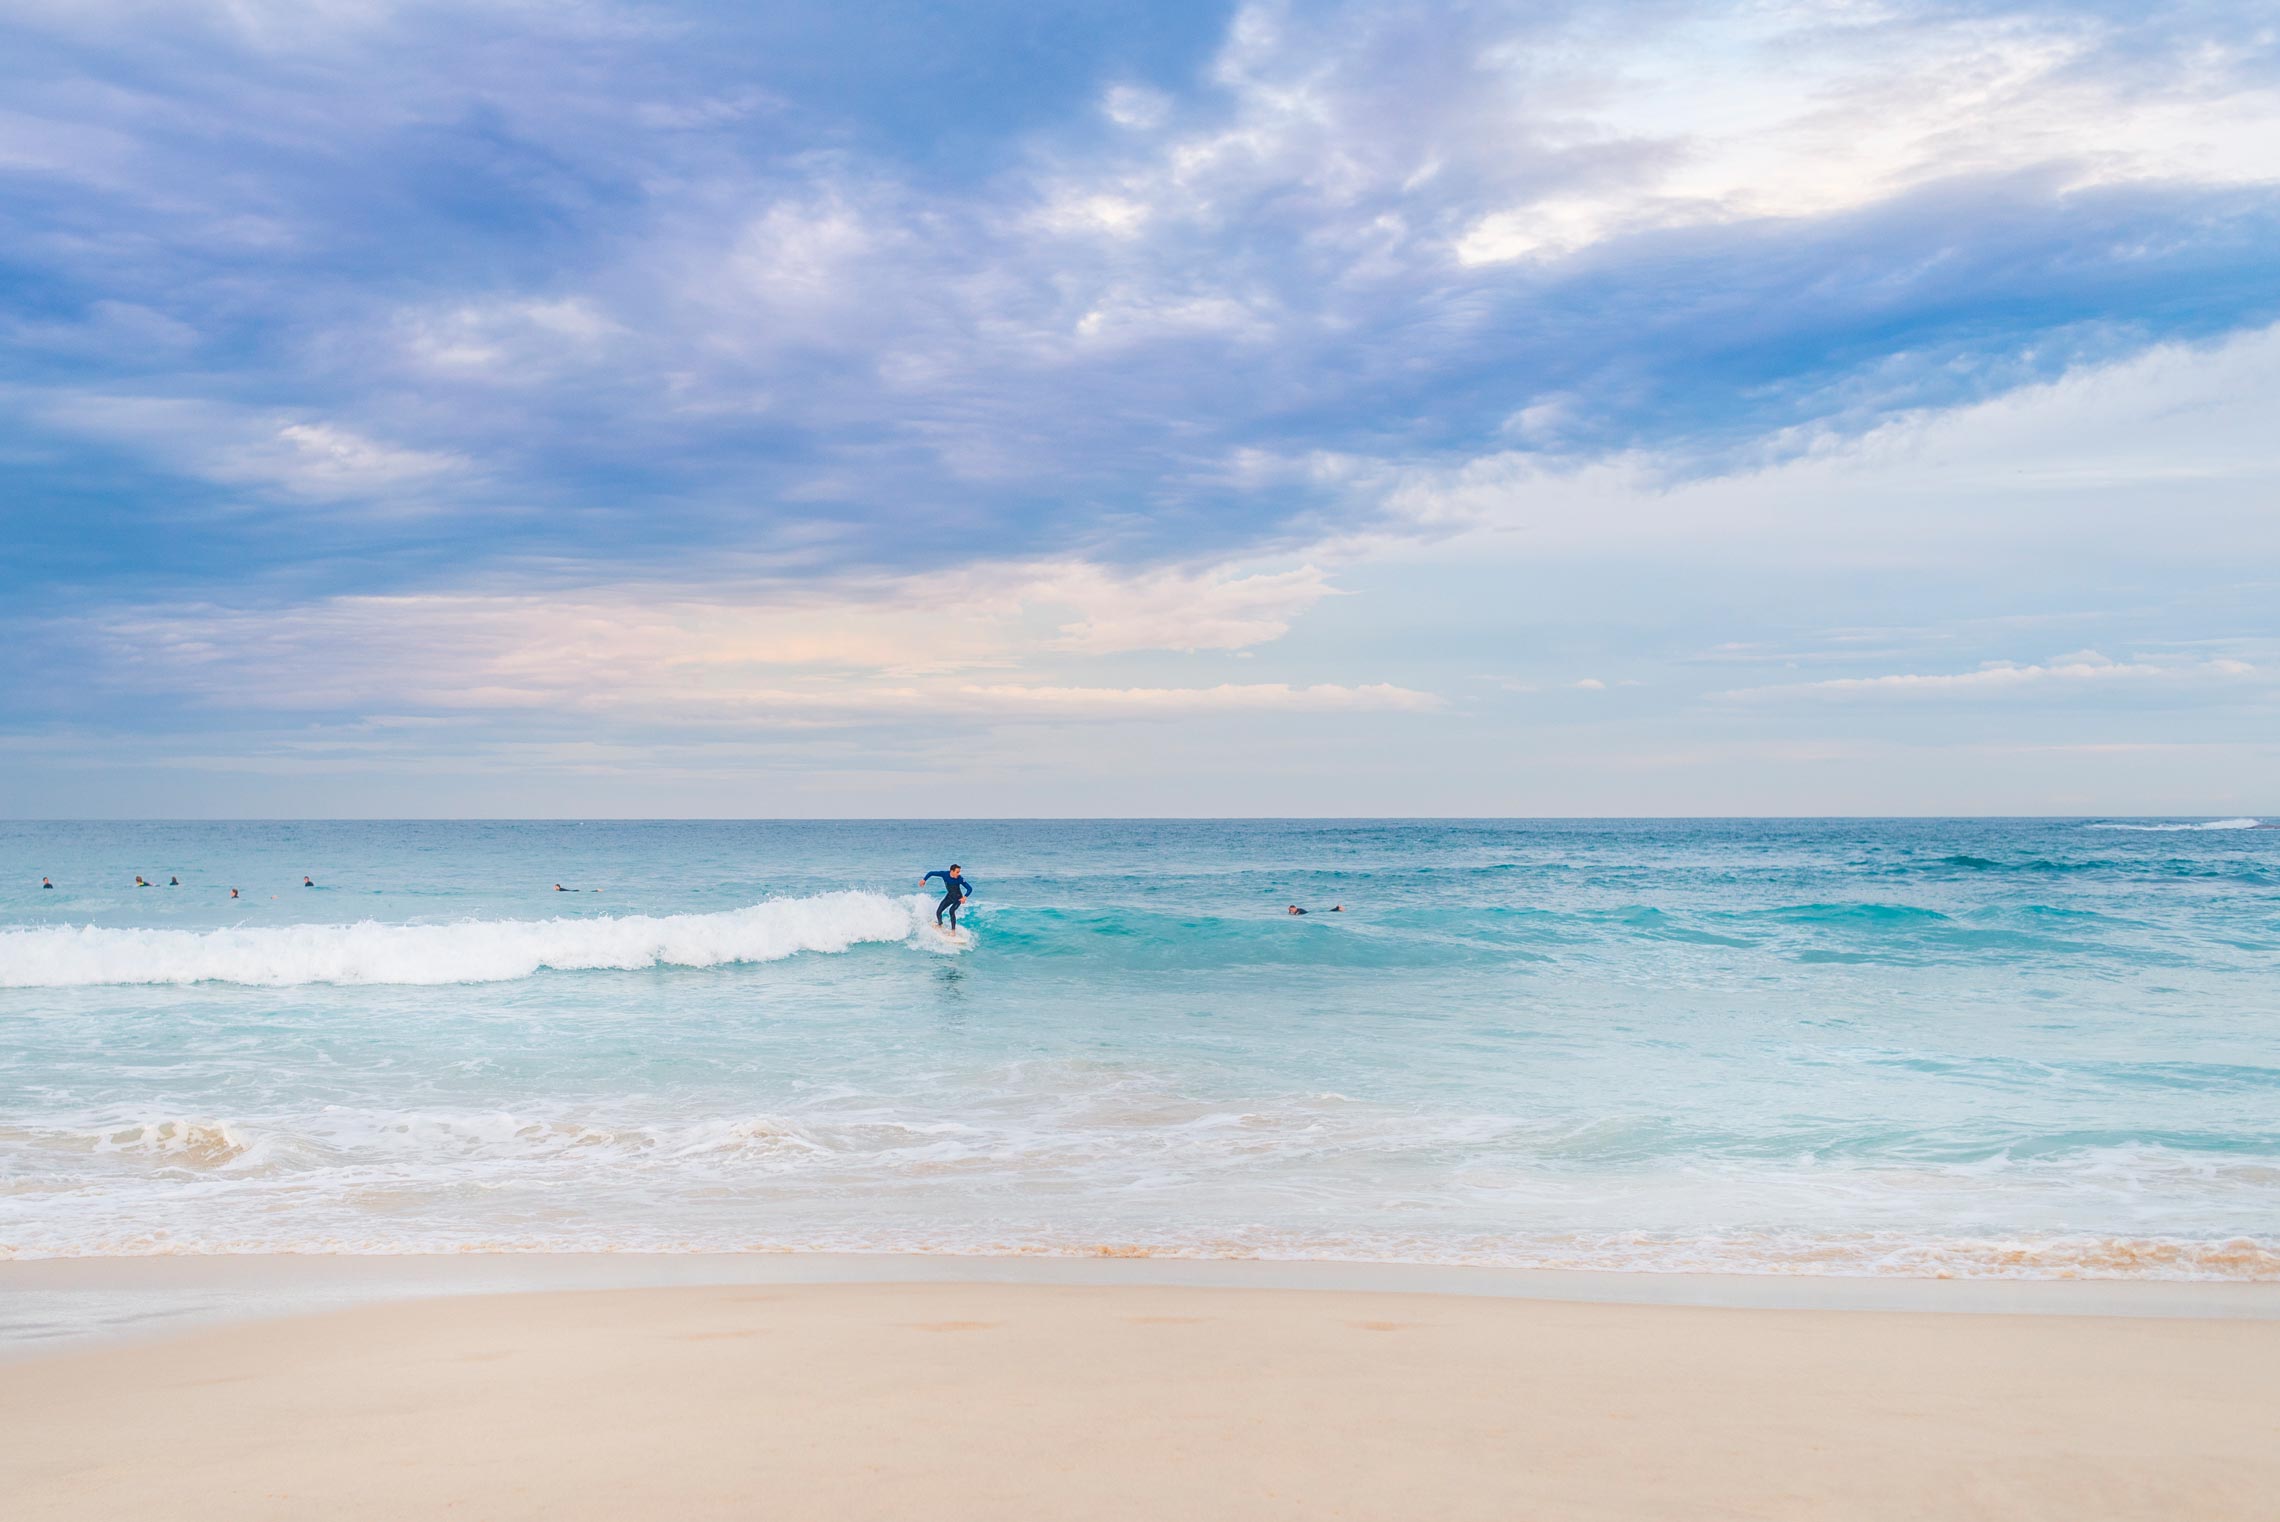 Sydney, Bondi Beach, Surfer